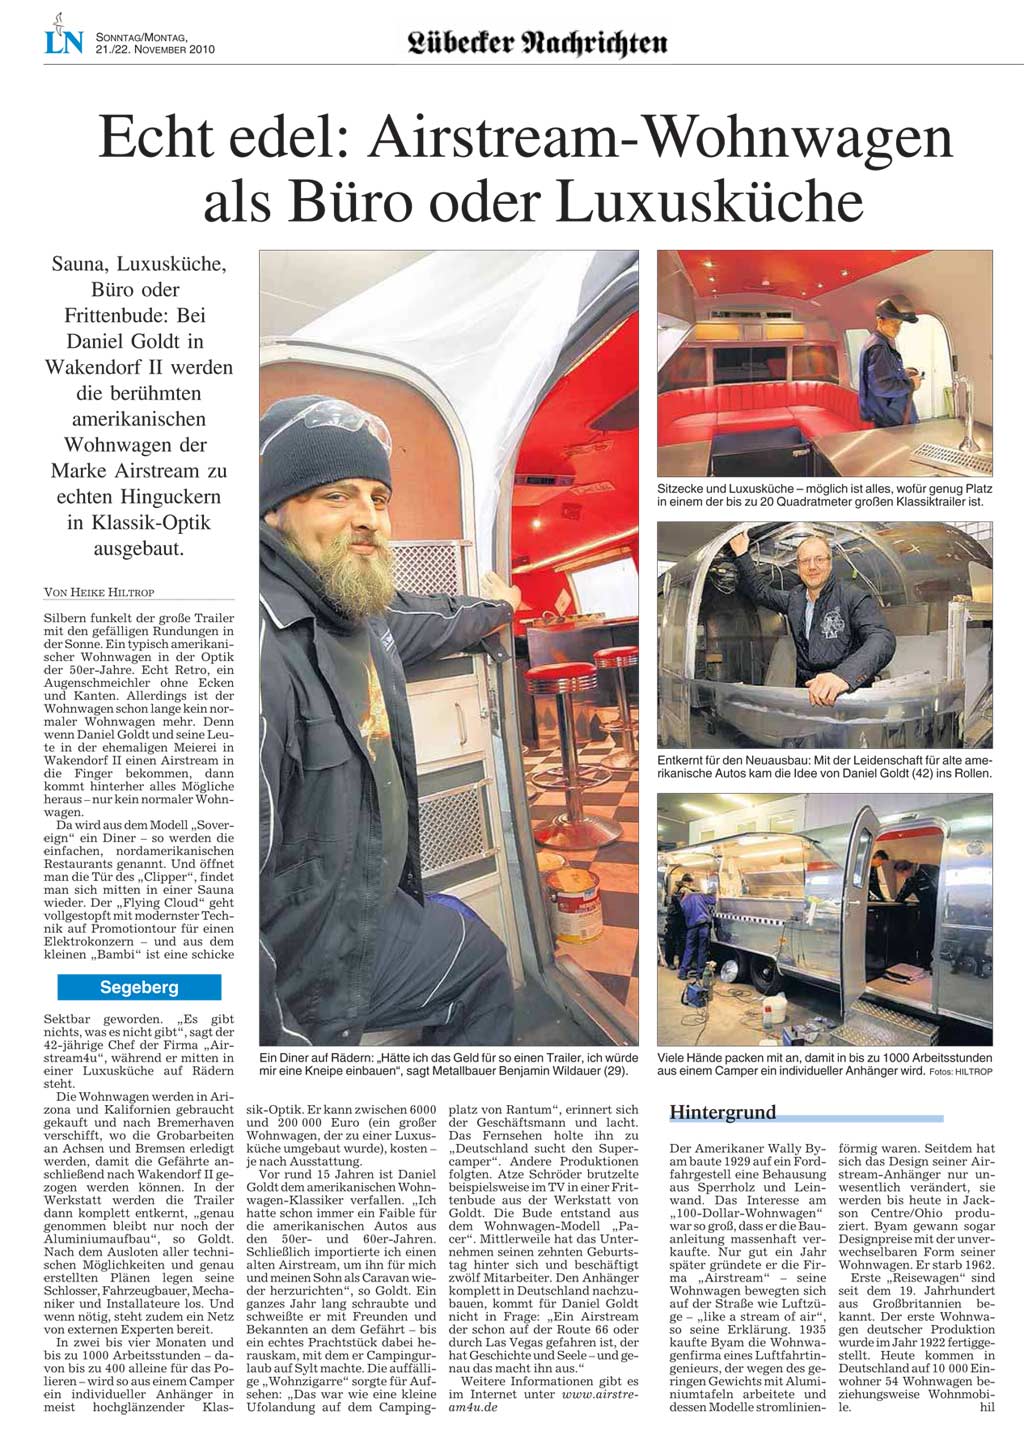 Airstream4U Lübecker Zeitung